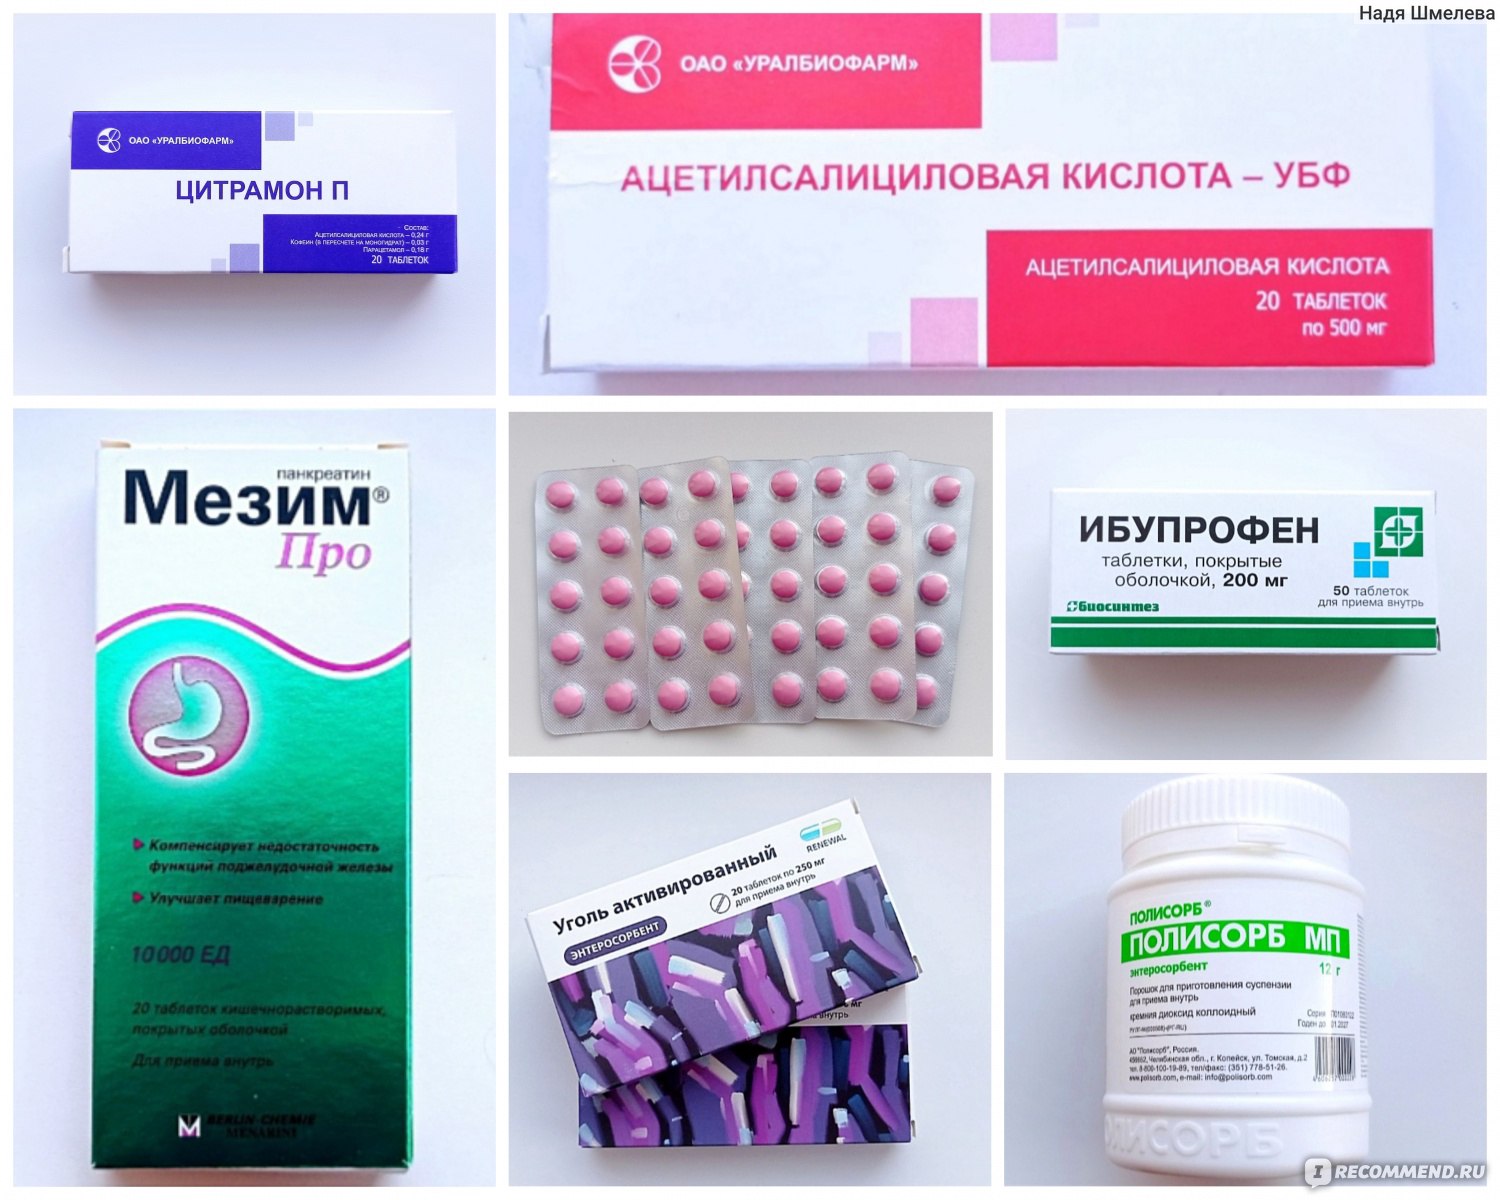 Поиск лекарств в аптеках 2048080